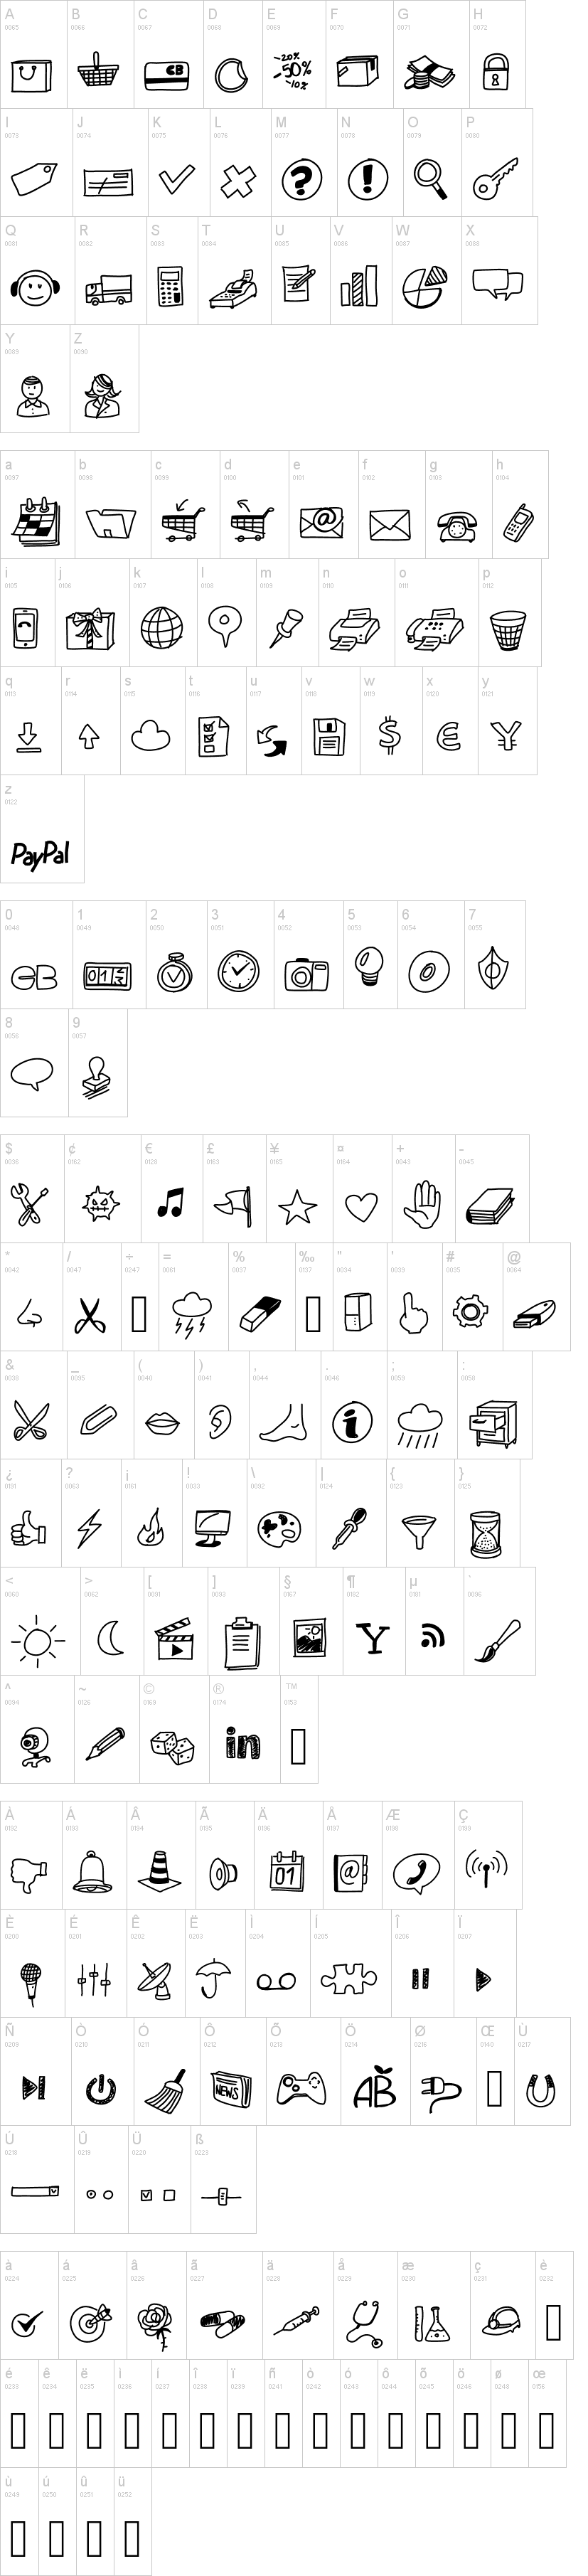 Peax Drawn Icons